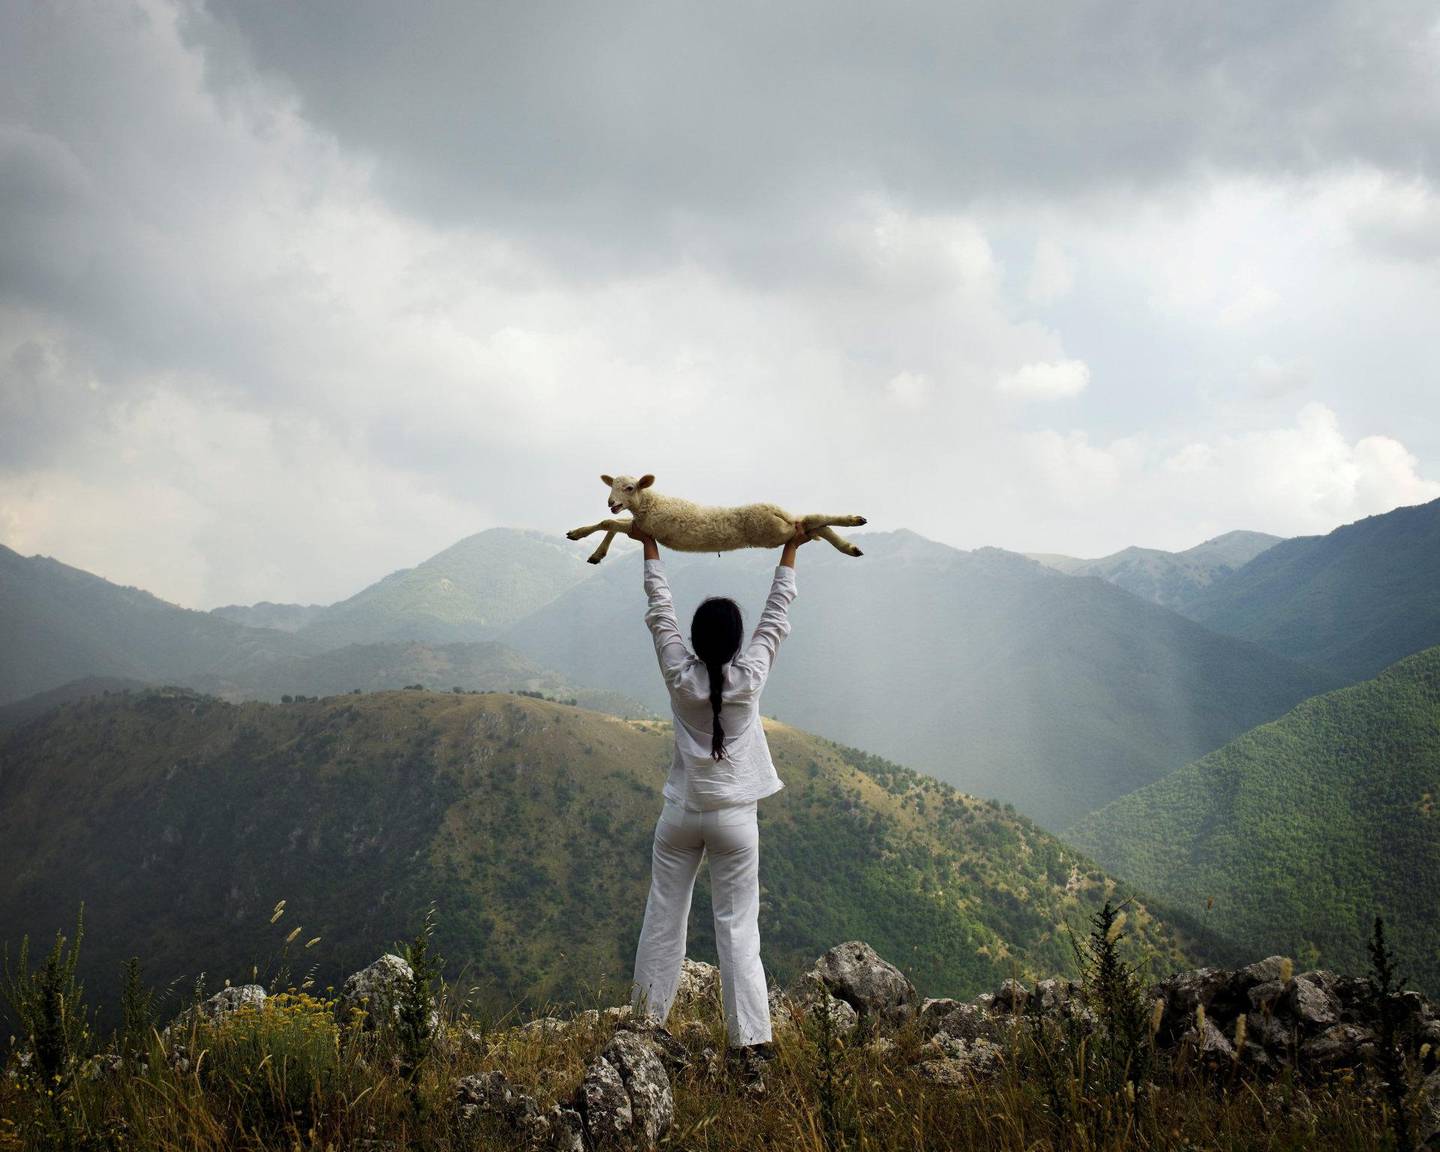 Marina Abramovics «Holding the Lamb!» er med på utstillingen. Foto: Marina Abramovic. Christen Sveaas' Kunststiftelse